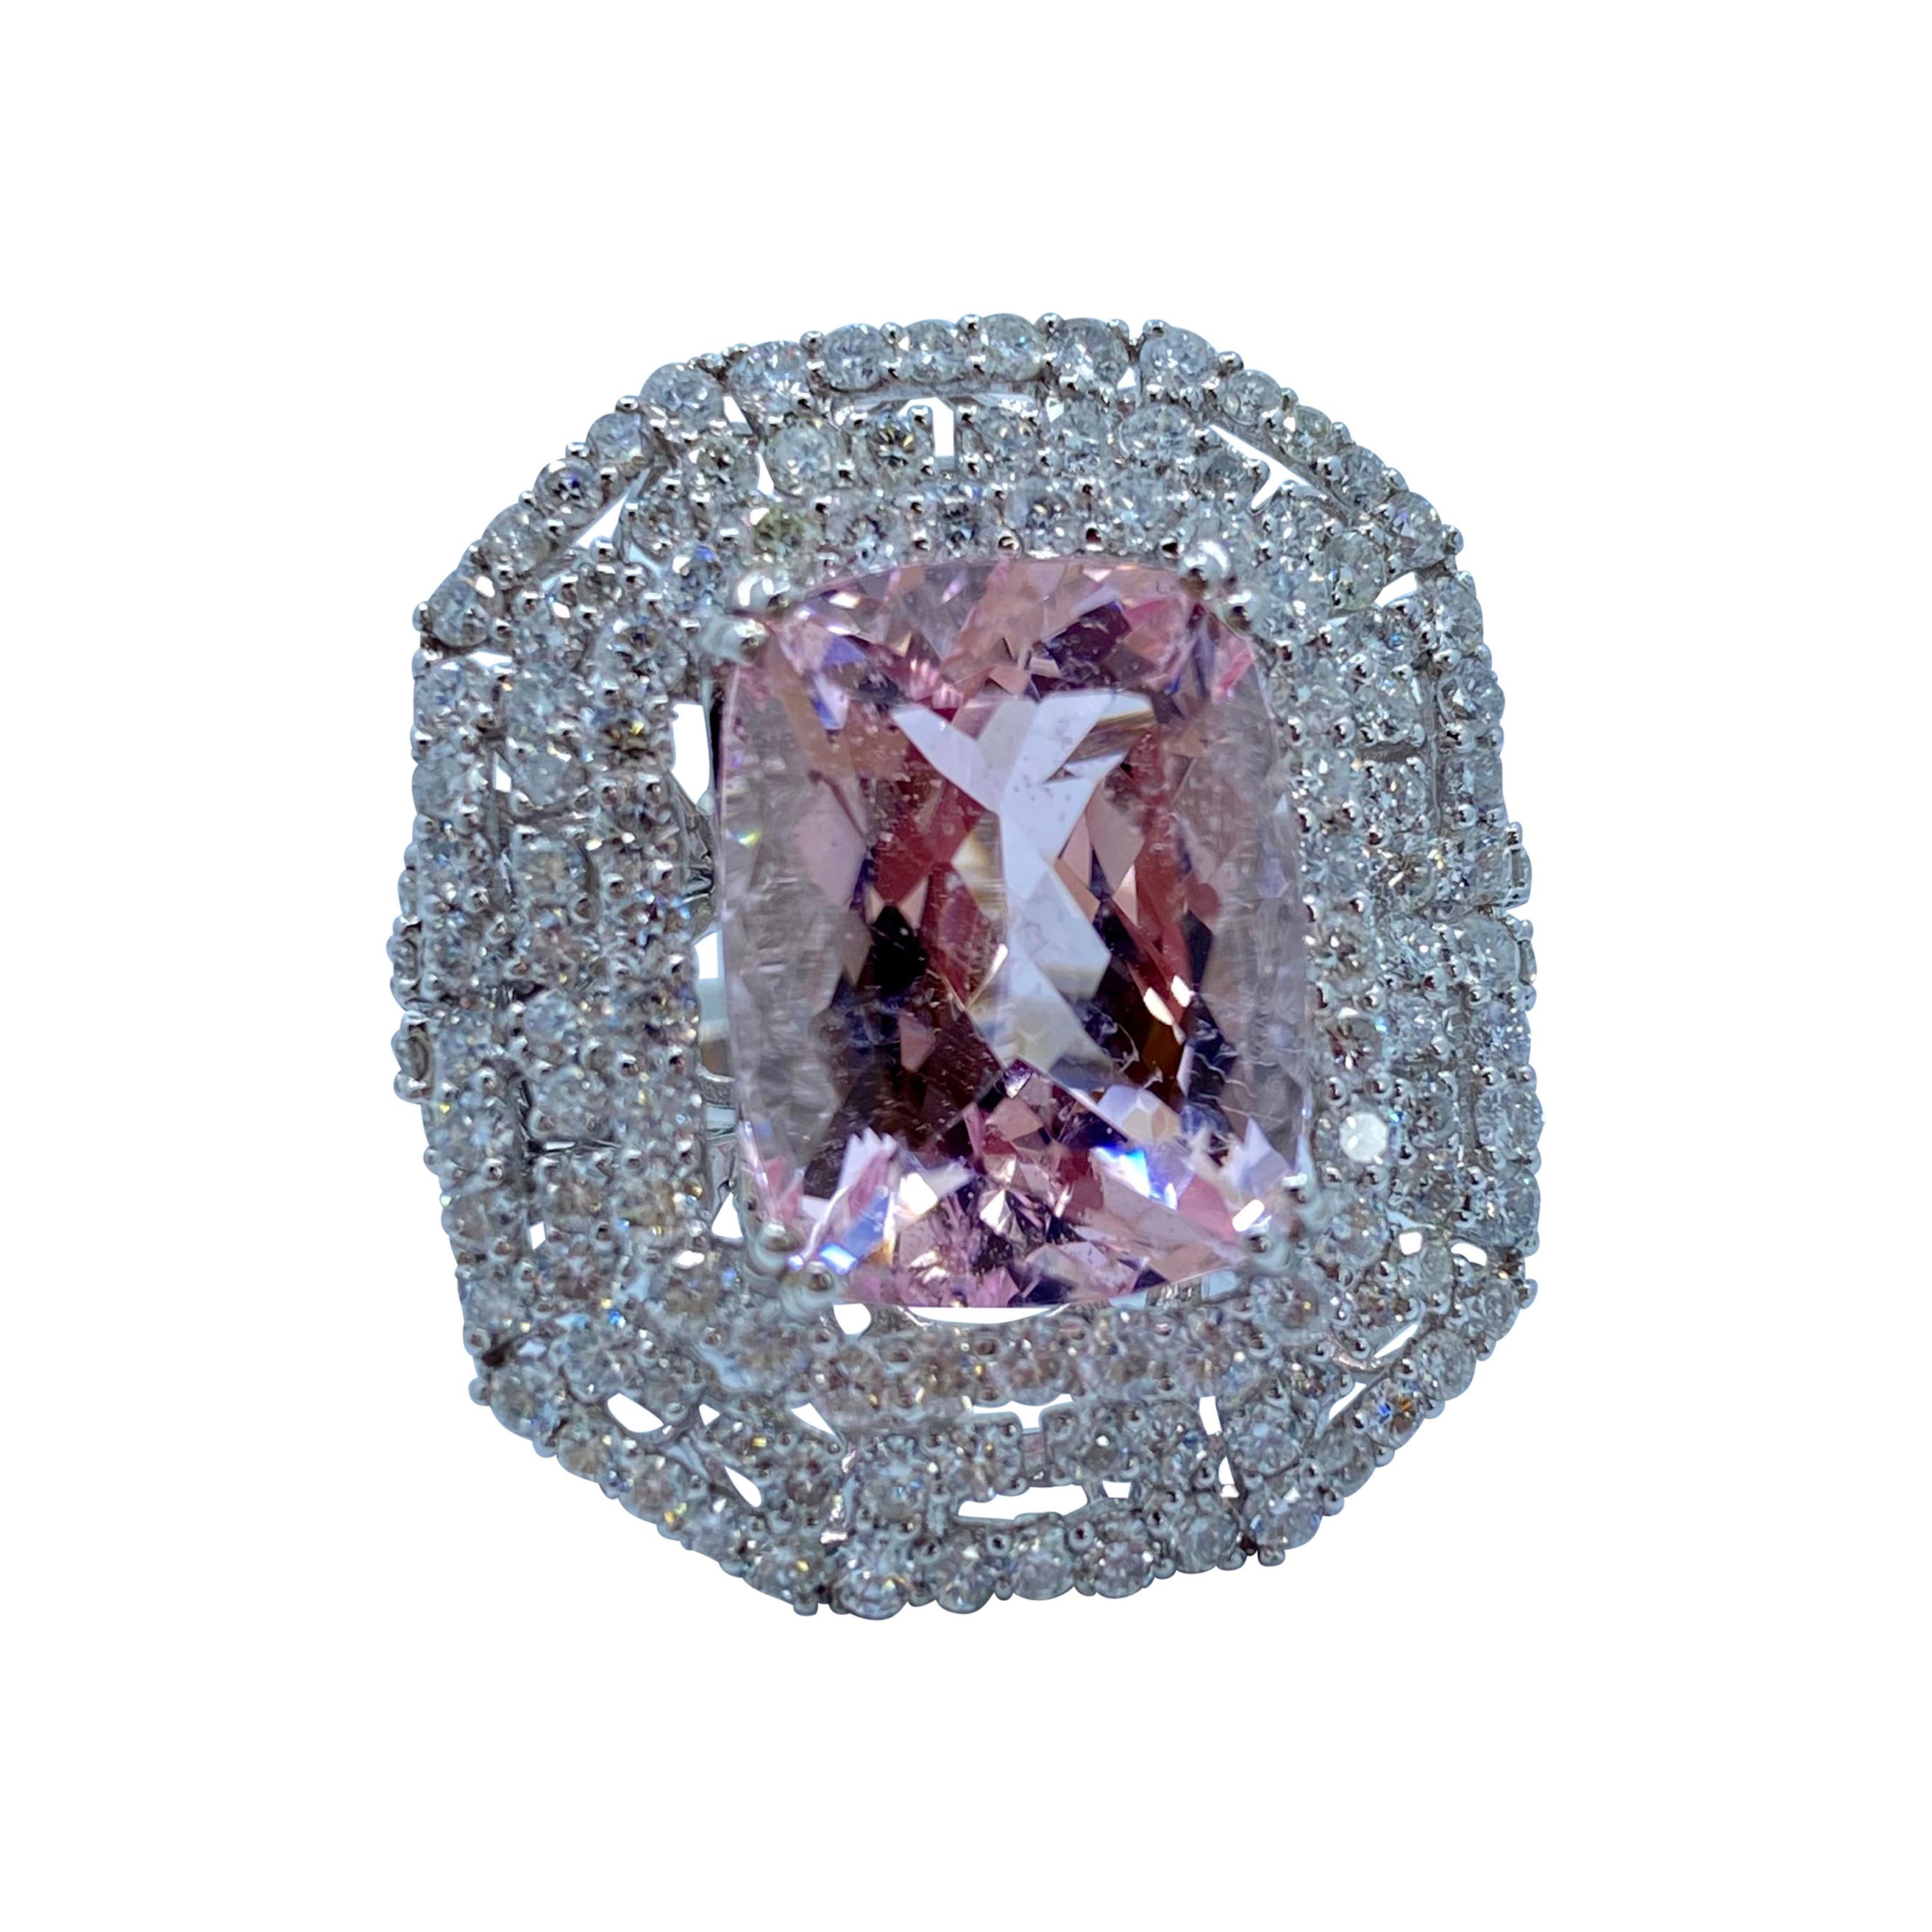 Stunning Large Pink Morganite and Diamond Ring in 18 Karat White Gold